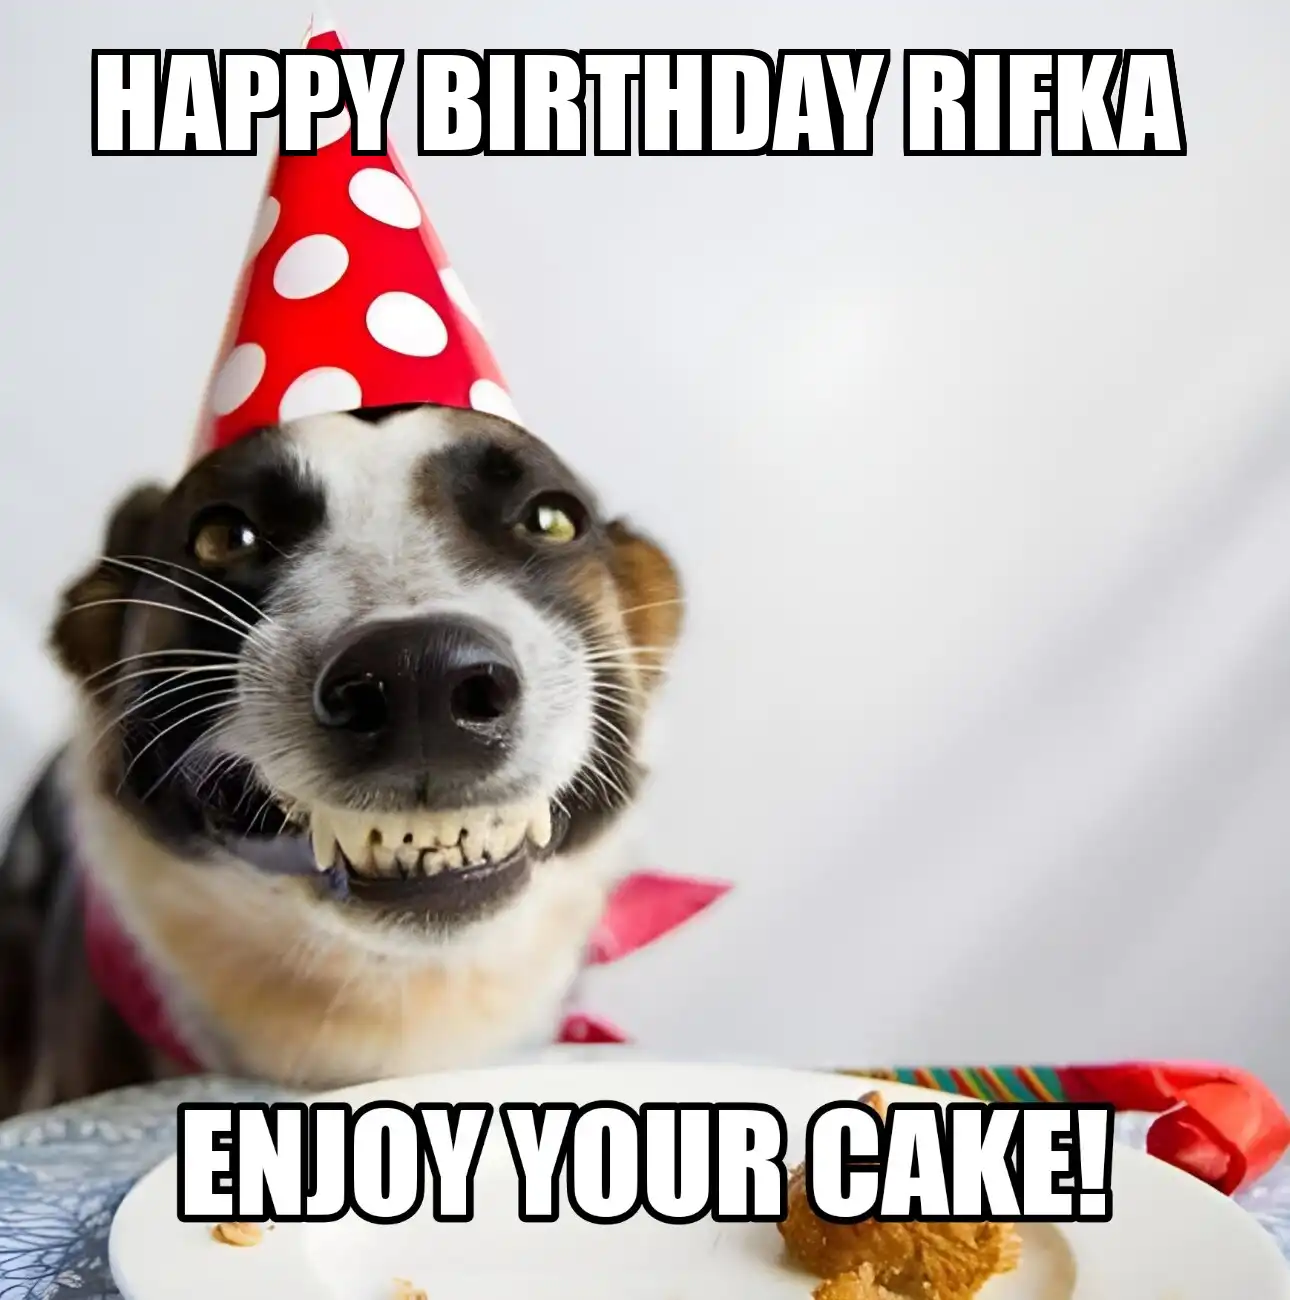 Happy Birthday Rifka Enjoy Your Cake Dog Meme